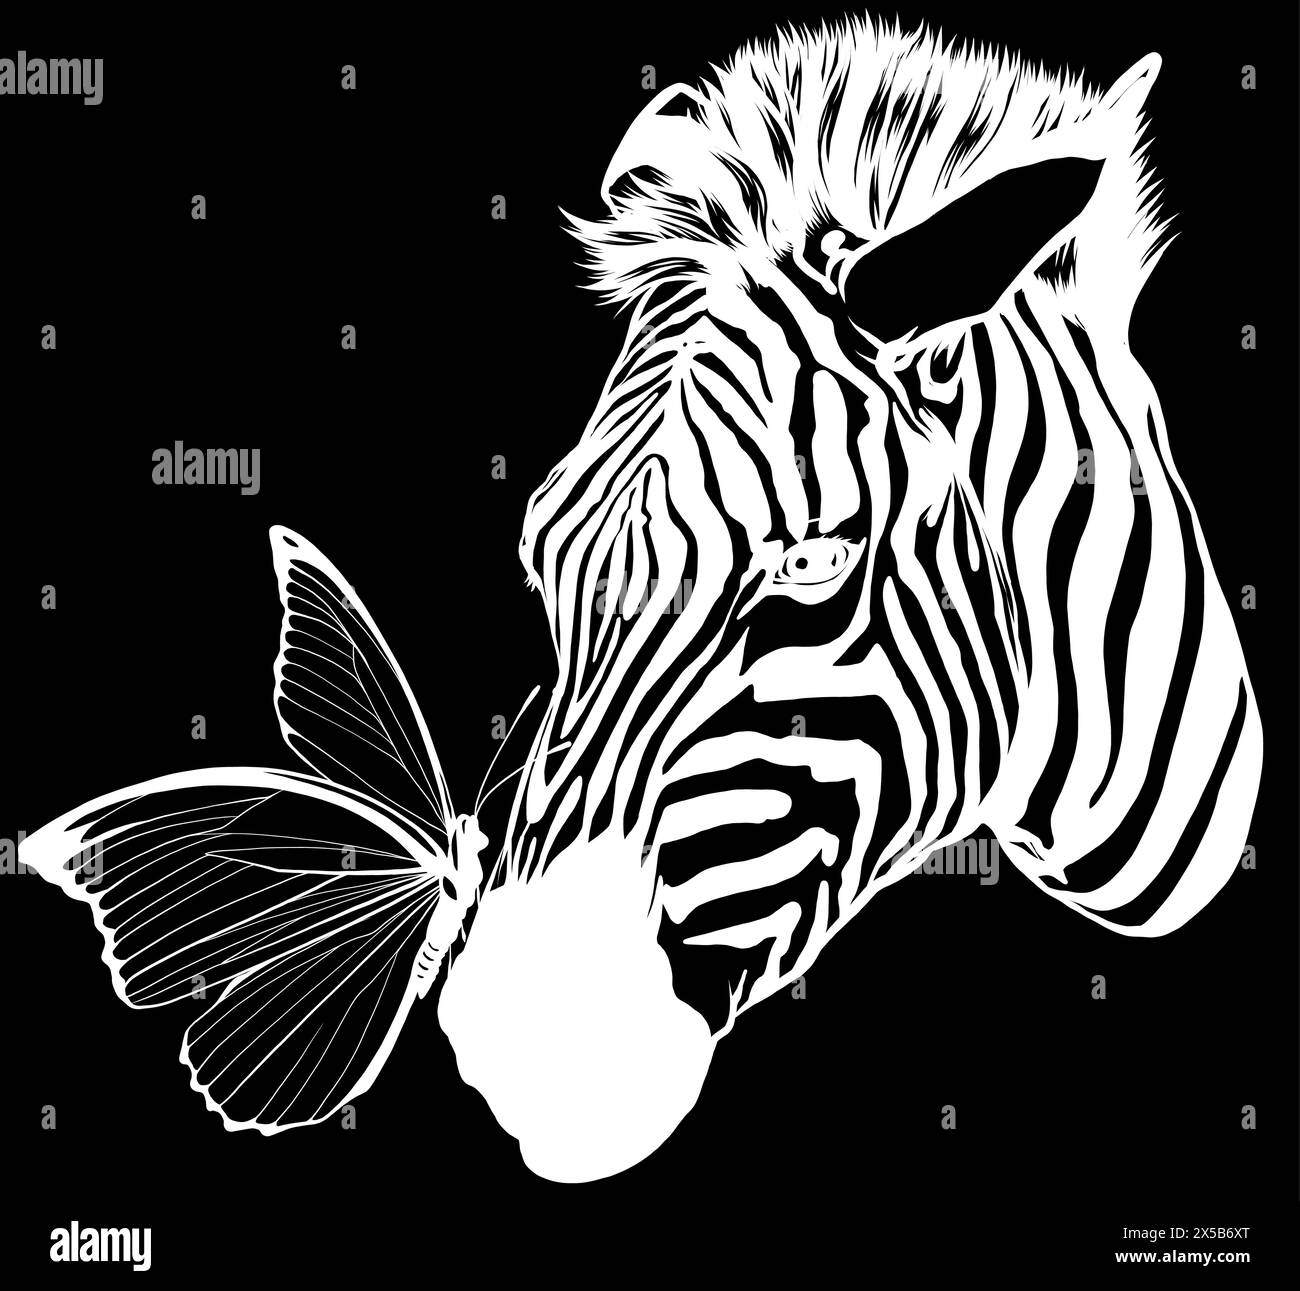 silhouette bianca di farfalla sulla testa zebra vettoriale su sfondo nero Illustrazione Vettoriale